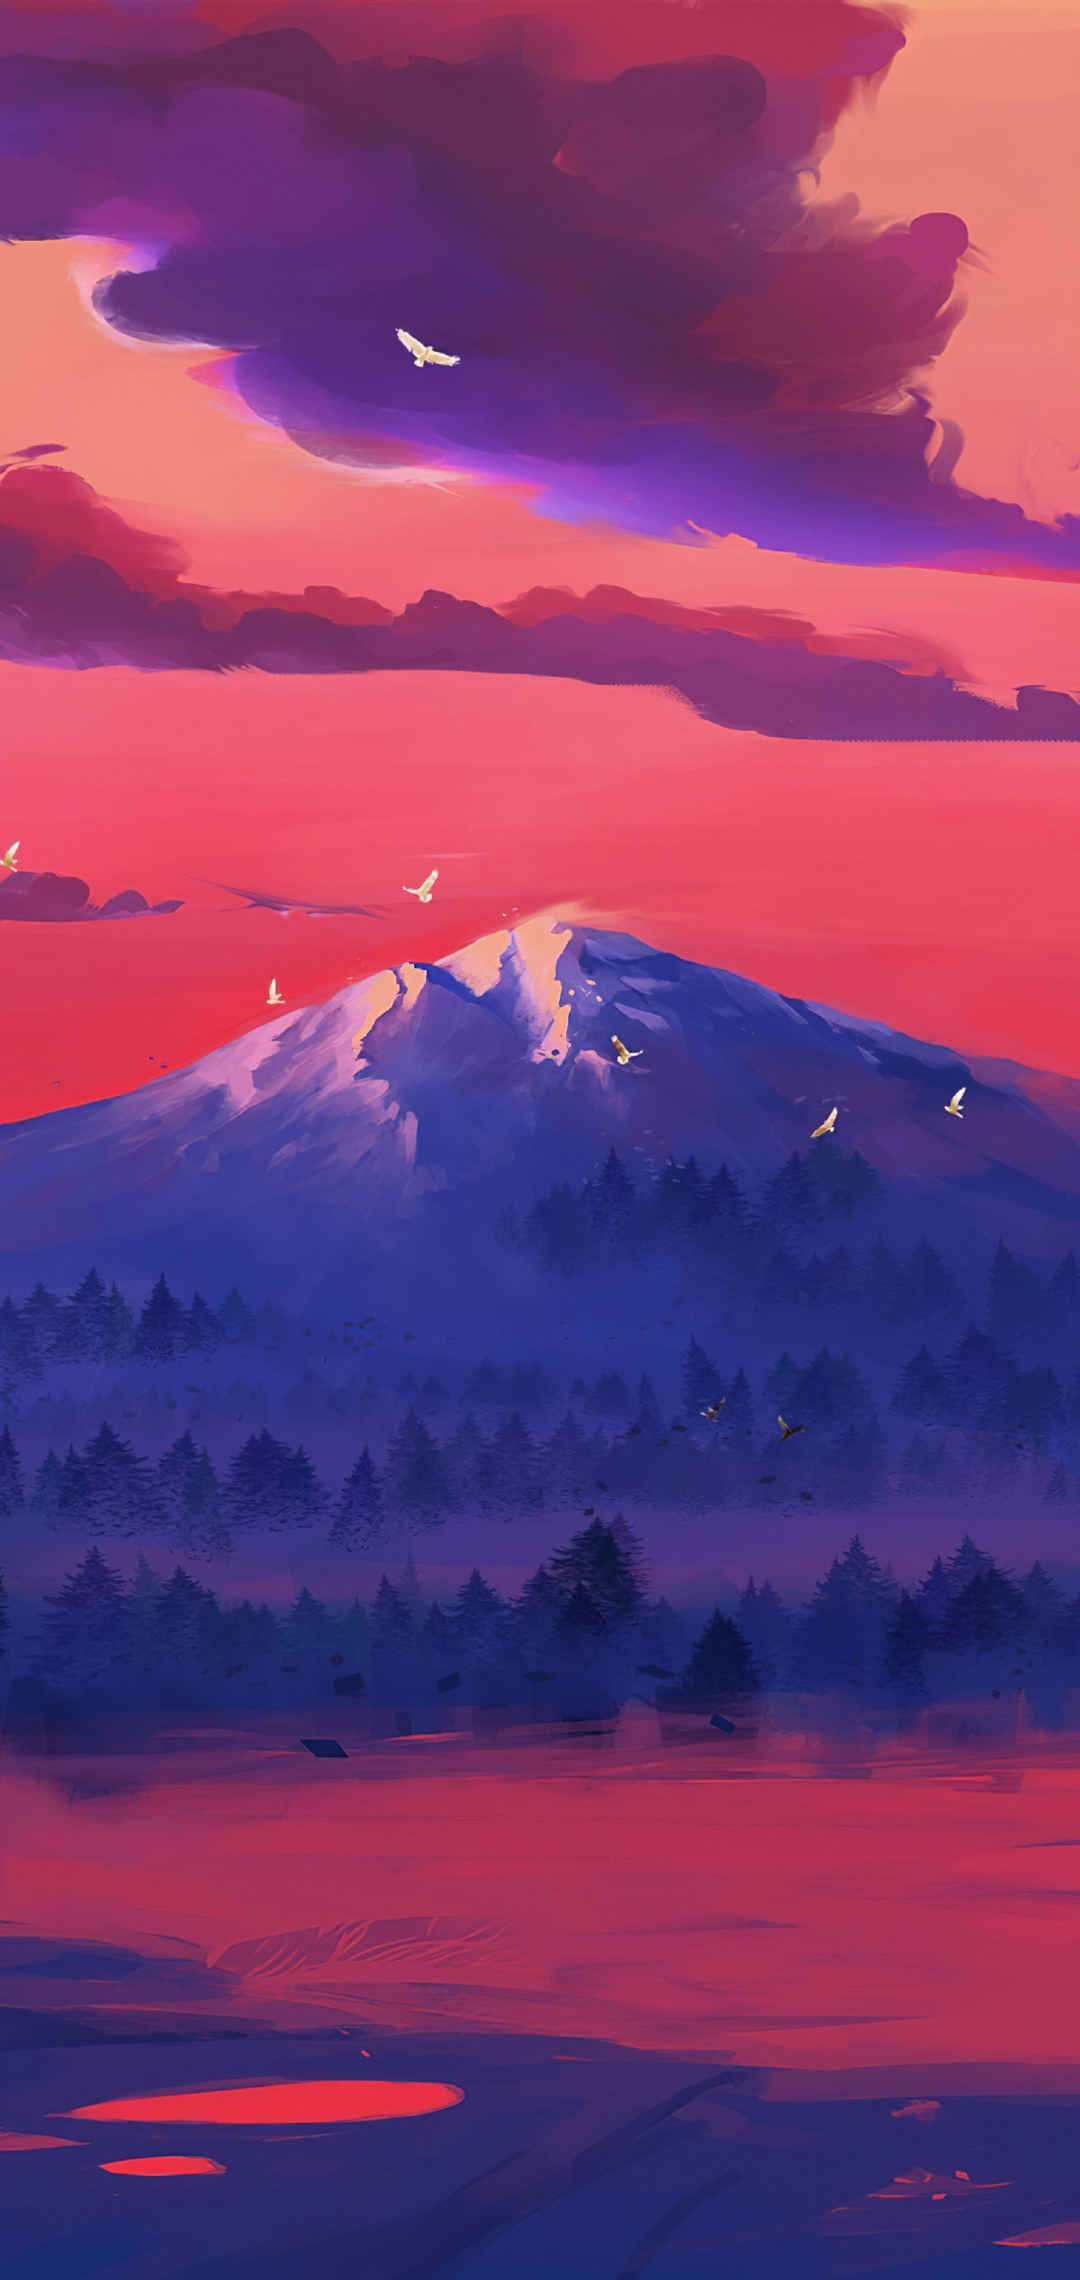 夕阳映红的湖泊和山脉